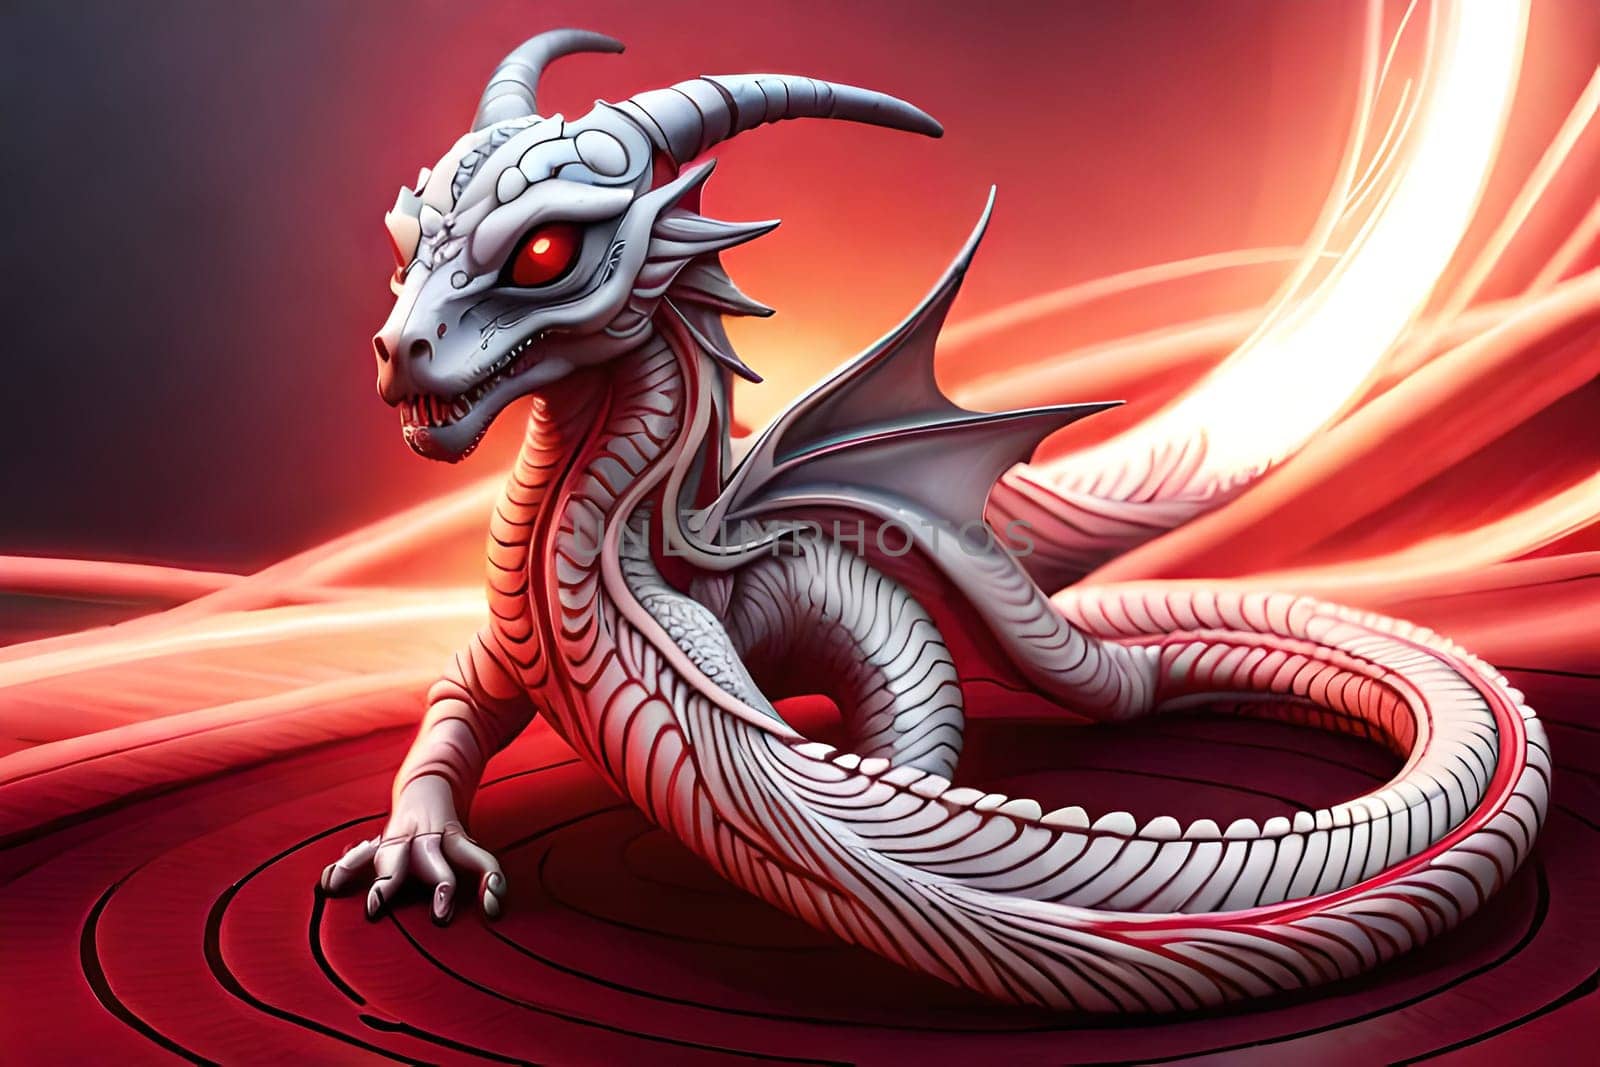 Fantasy evil dragon portrait. Surreal artwork of danger dragon from medieval mythology by milastokerpro